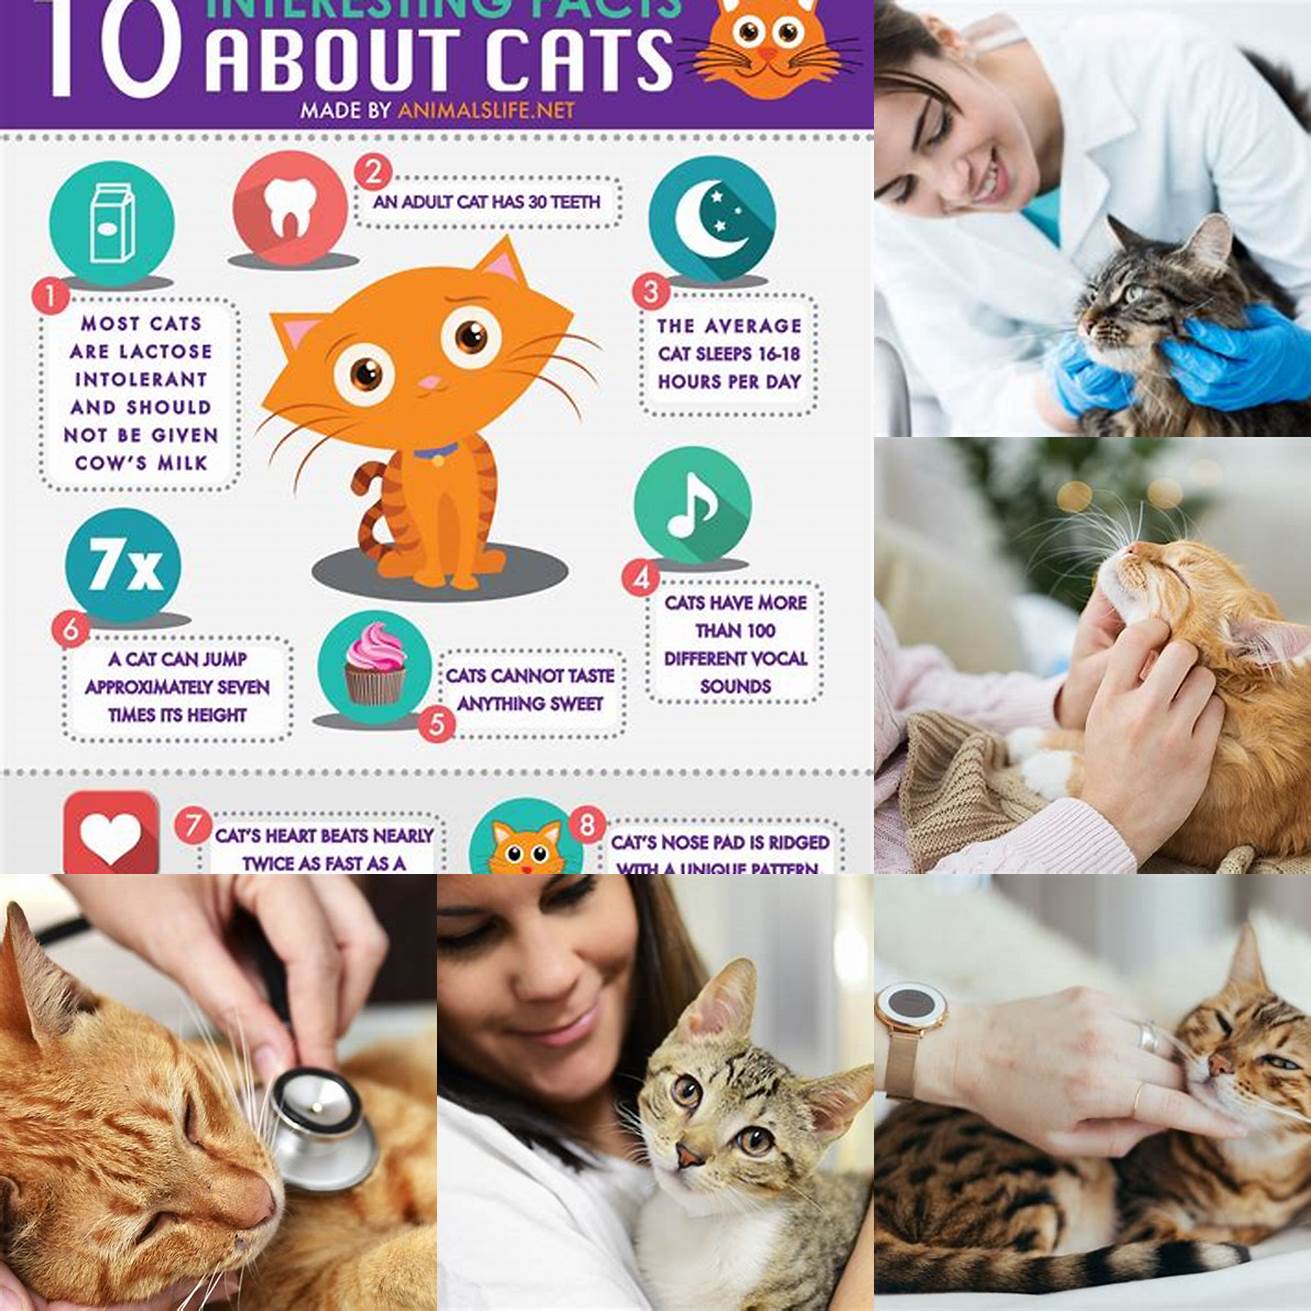 6 Cat care